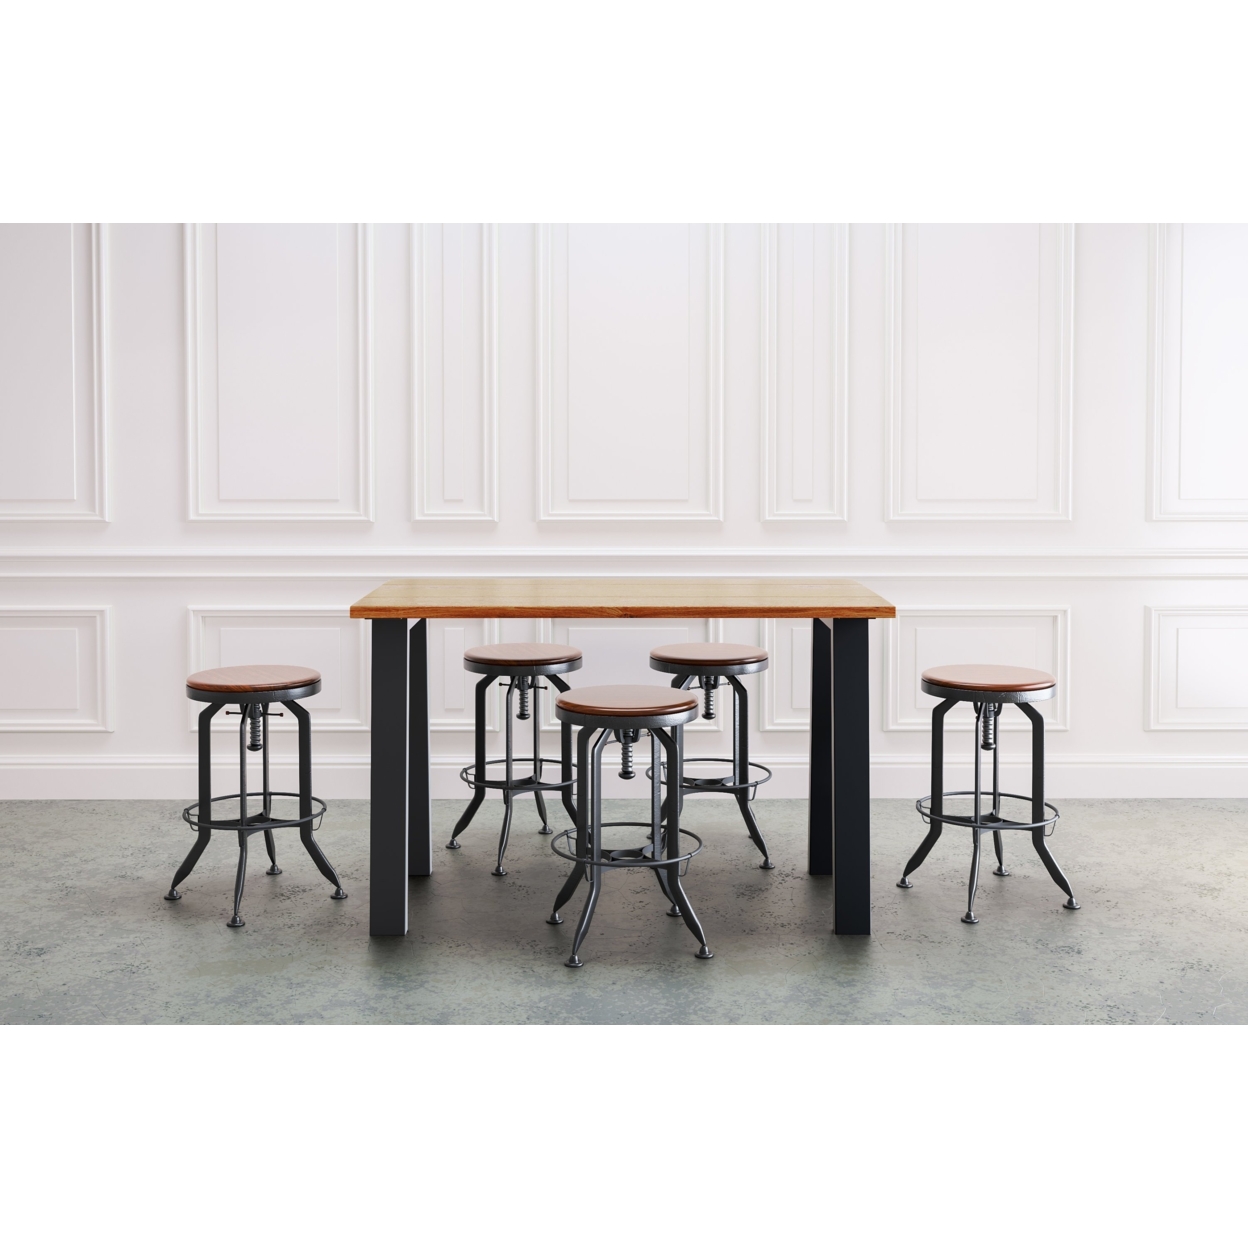 UMBUZÃ New! Counter Height Dining Table/Common Use Table/Bar Table - 48x30